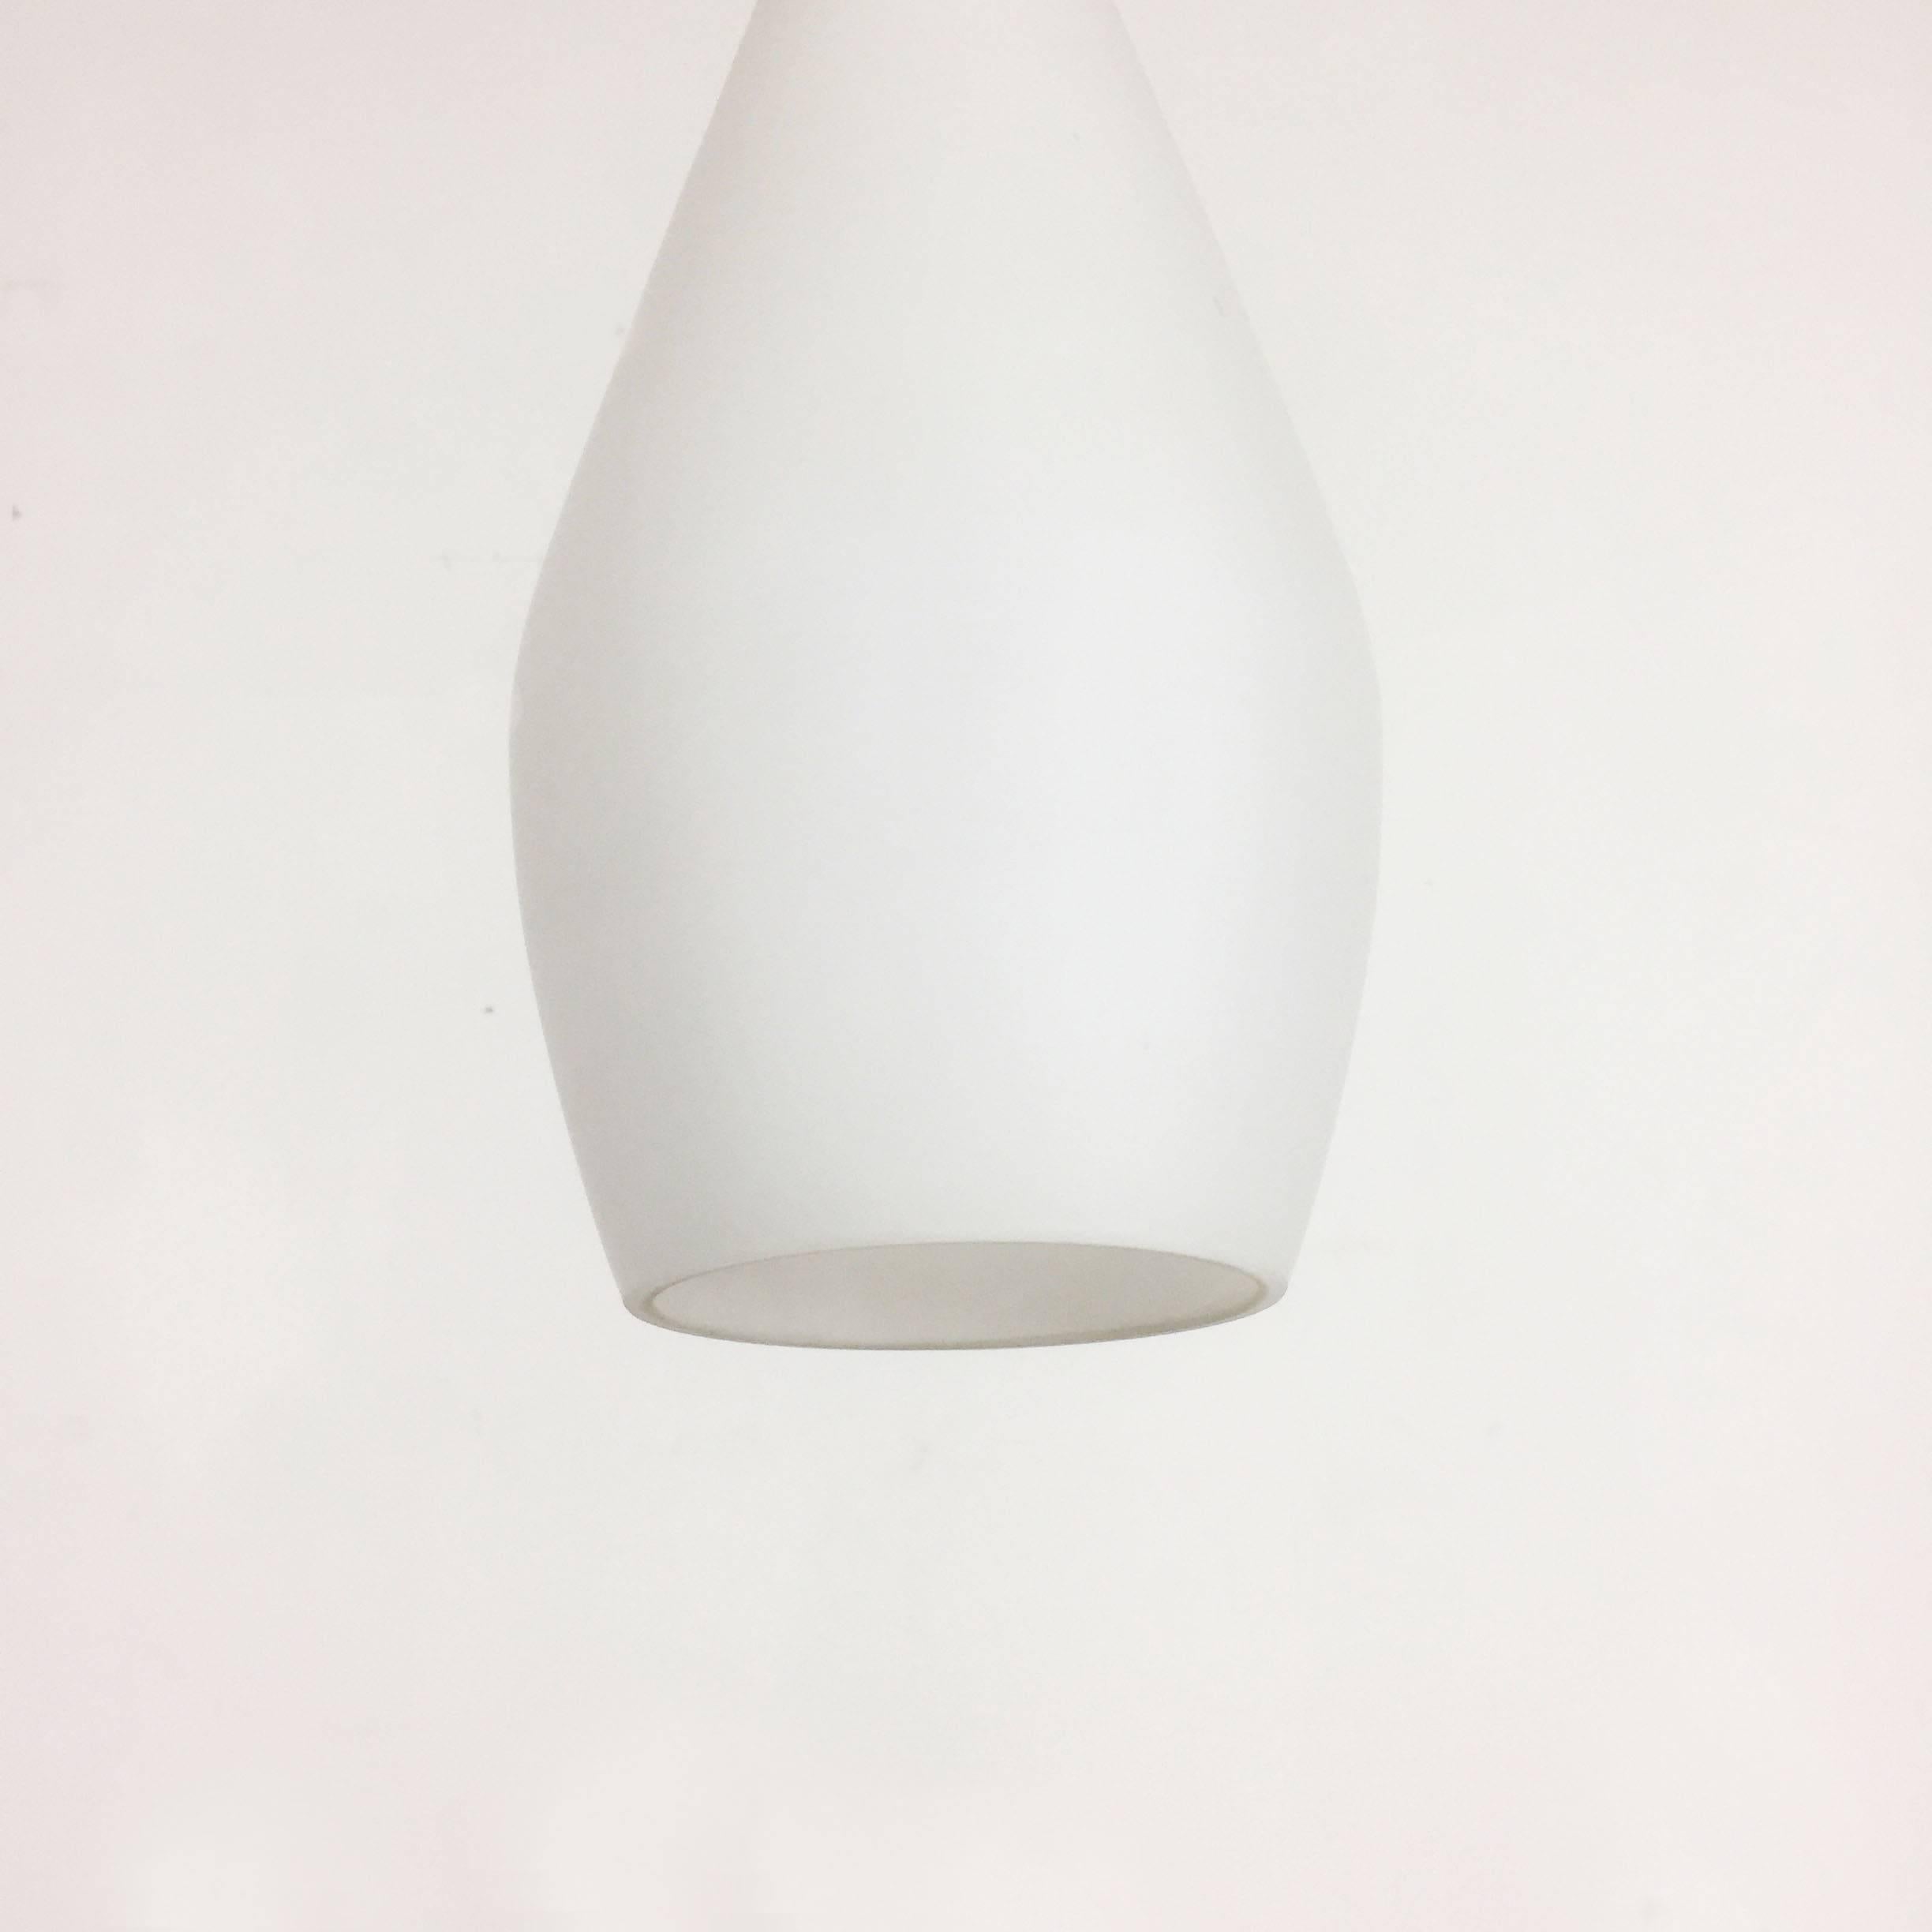 Midcentury Modernist Opal Glass Stilnovo Style Tube Hanging Light, Italy, 1950 In Good Condition For Sale In Kirchlengern, DE